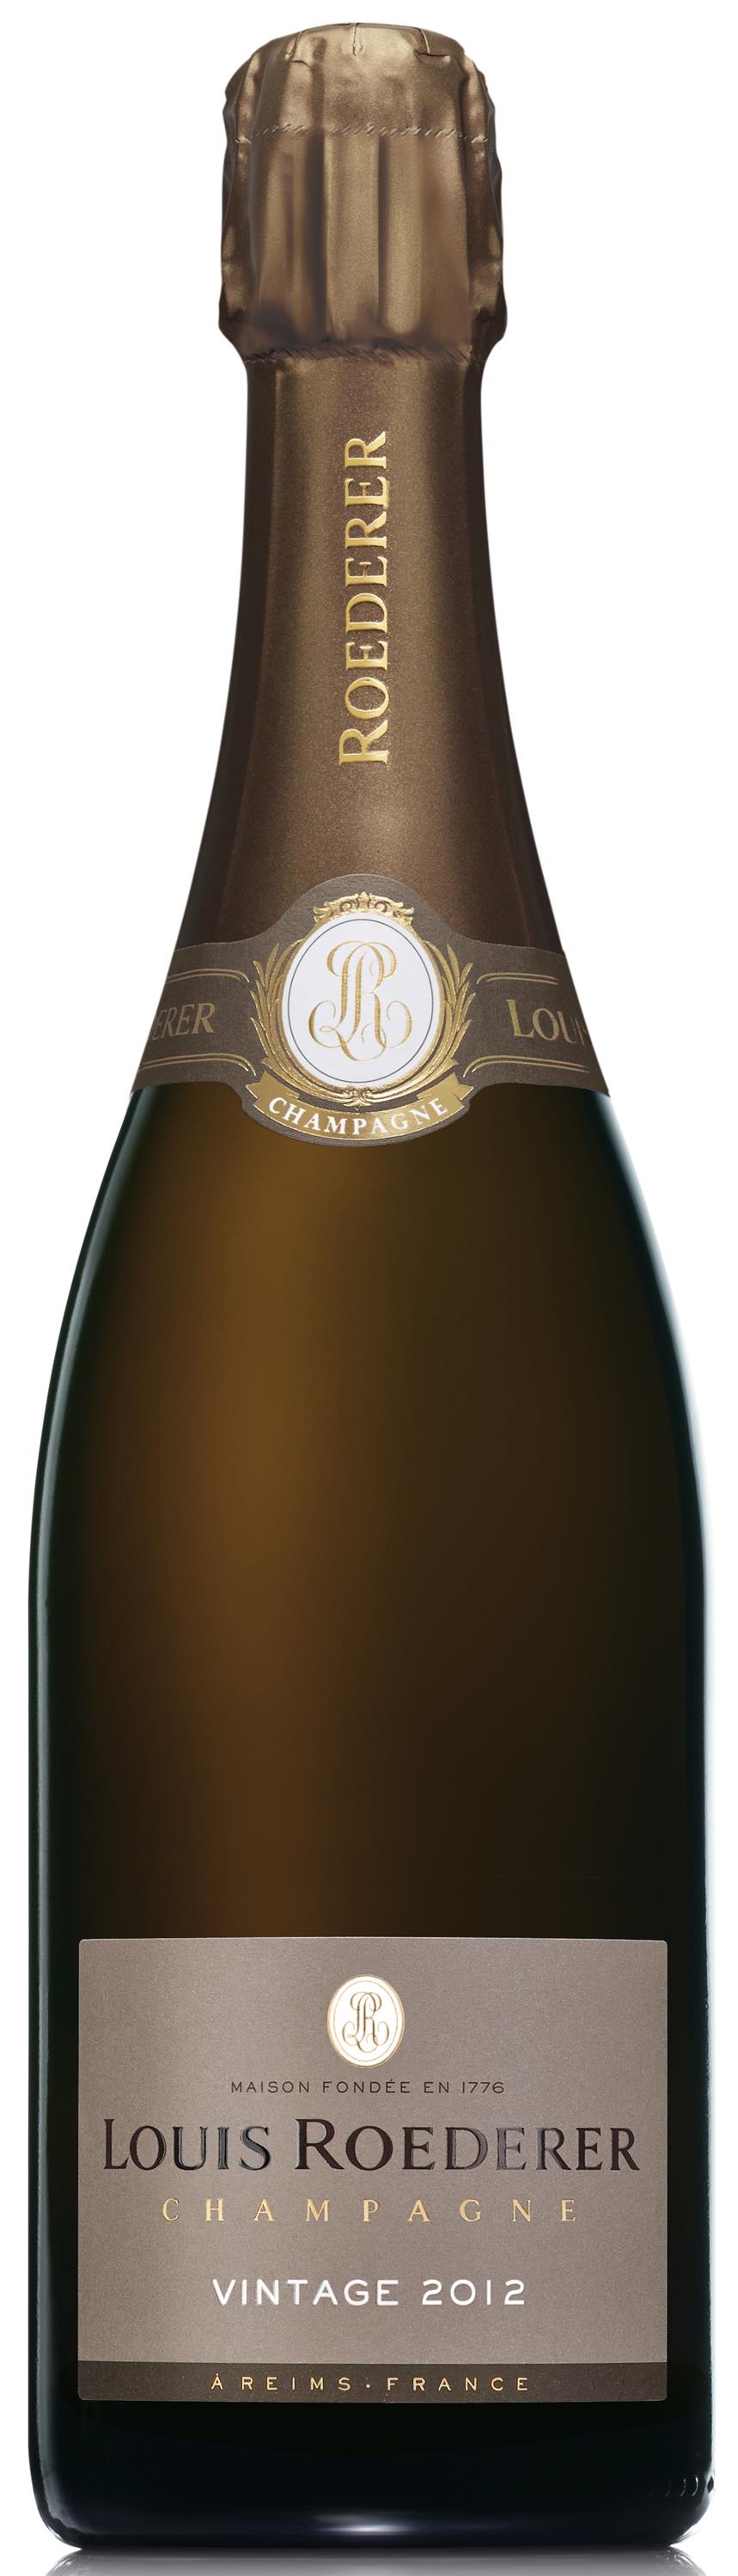 Champagne Louis Roederer Brut Vintage 2012